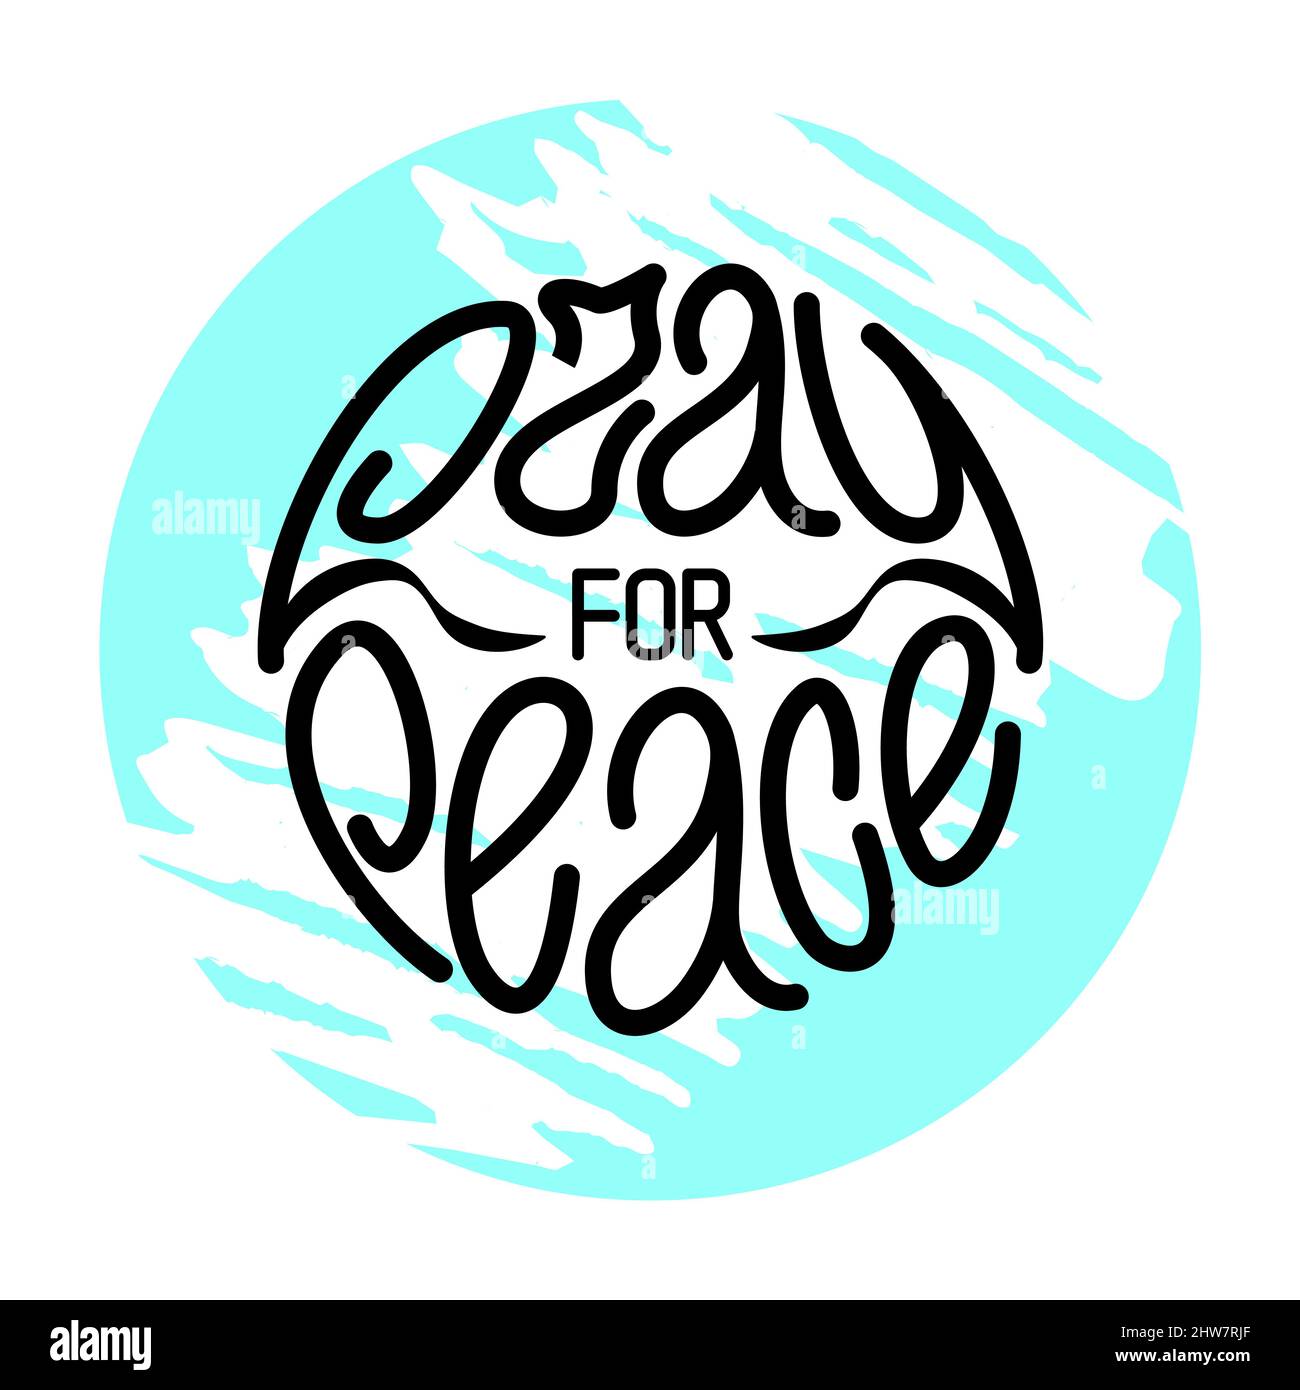 Betet für den Frieden. Handgezeichneter Schriftzug in blauem gerippten Kreis Stock Vektor